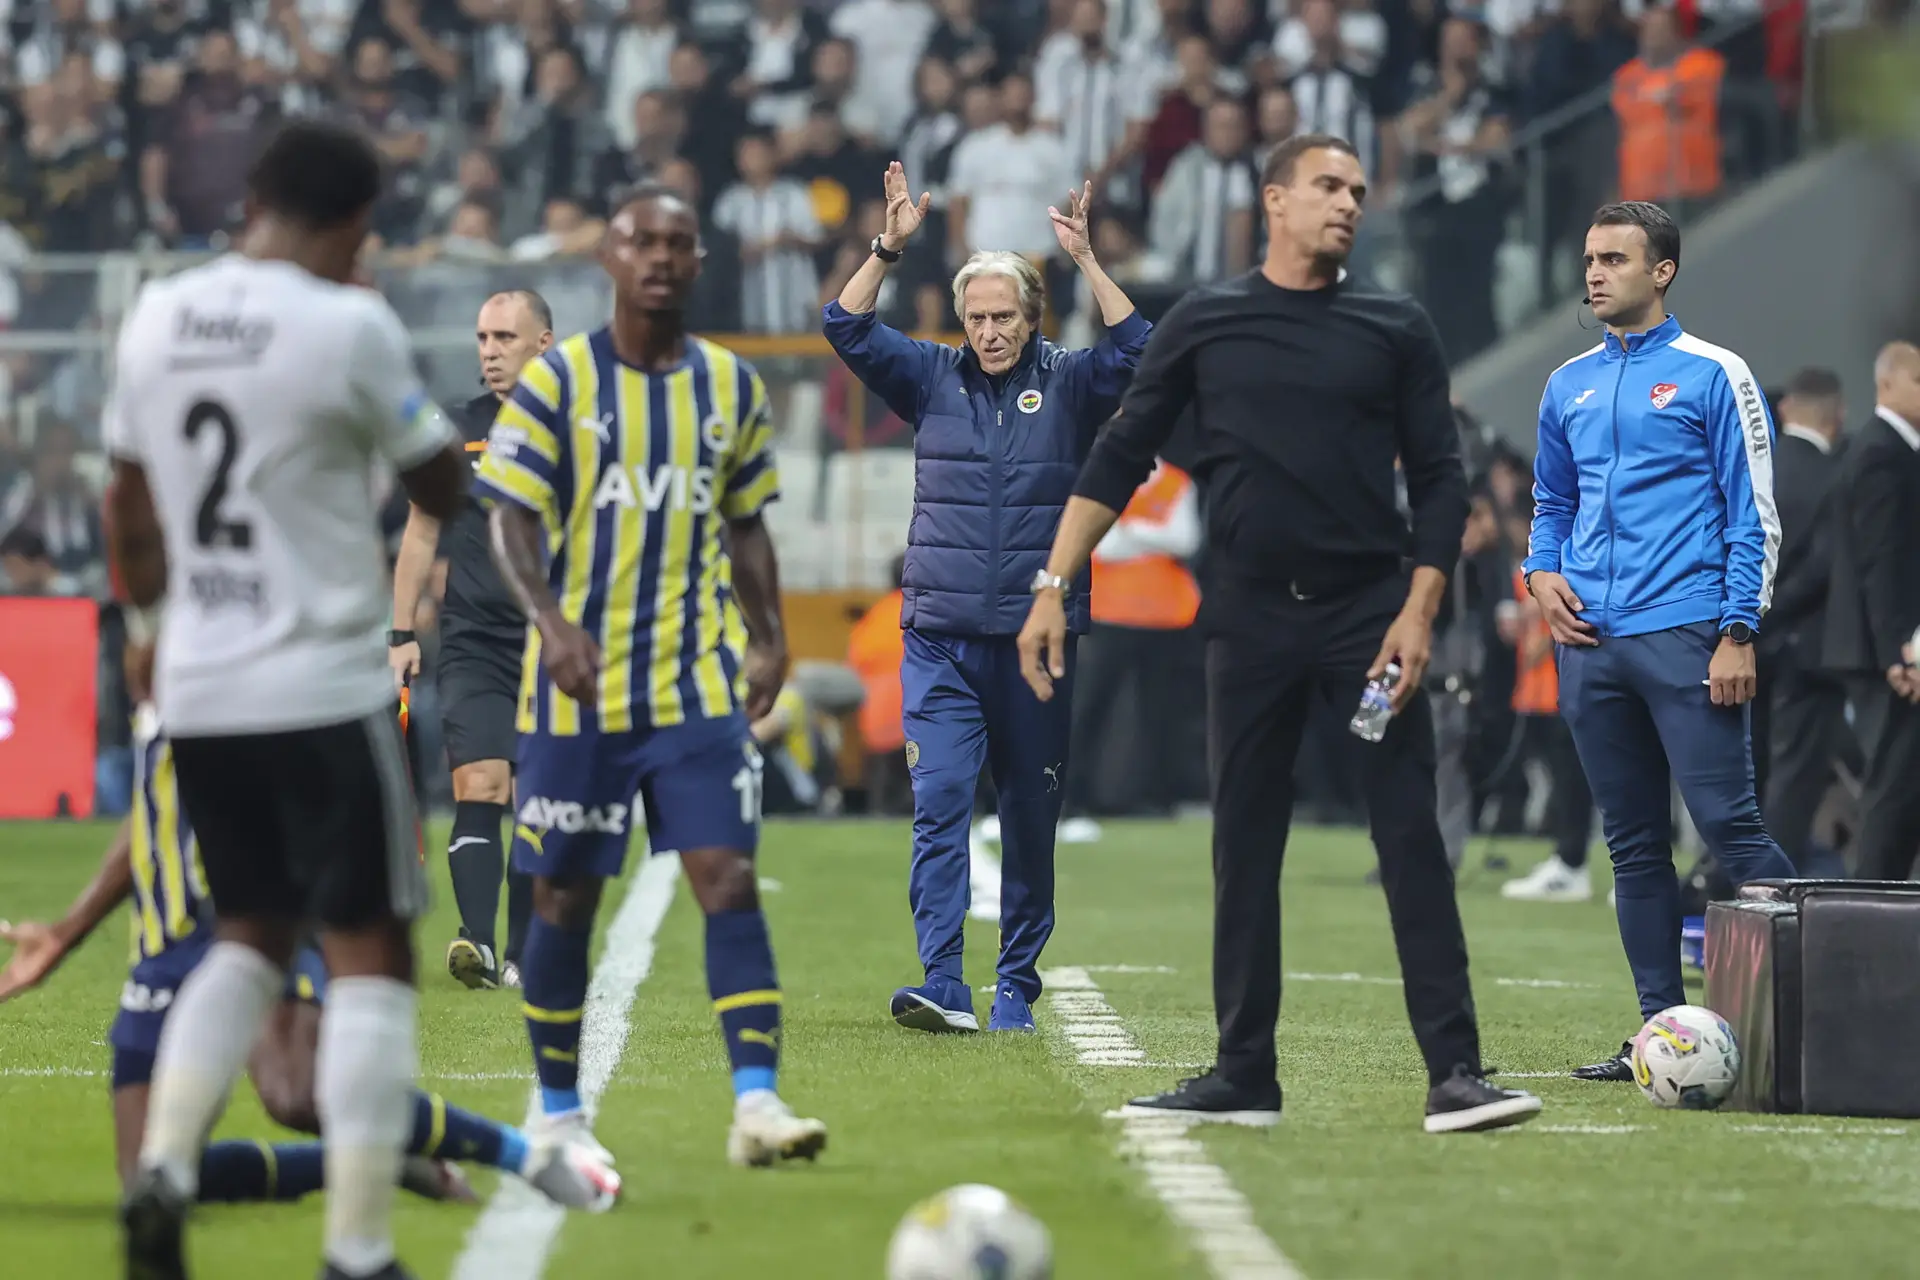 Fenerbahçe de Jorge Jesus empata em casa do Besiktas no dérbi de Istambul